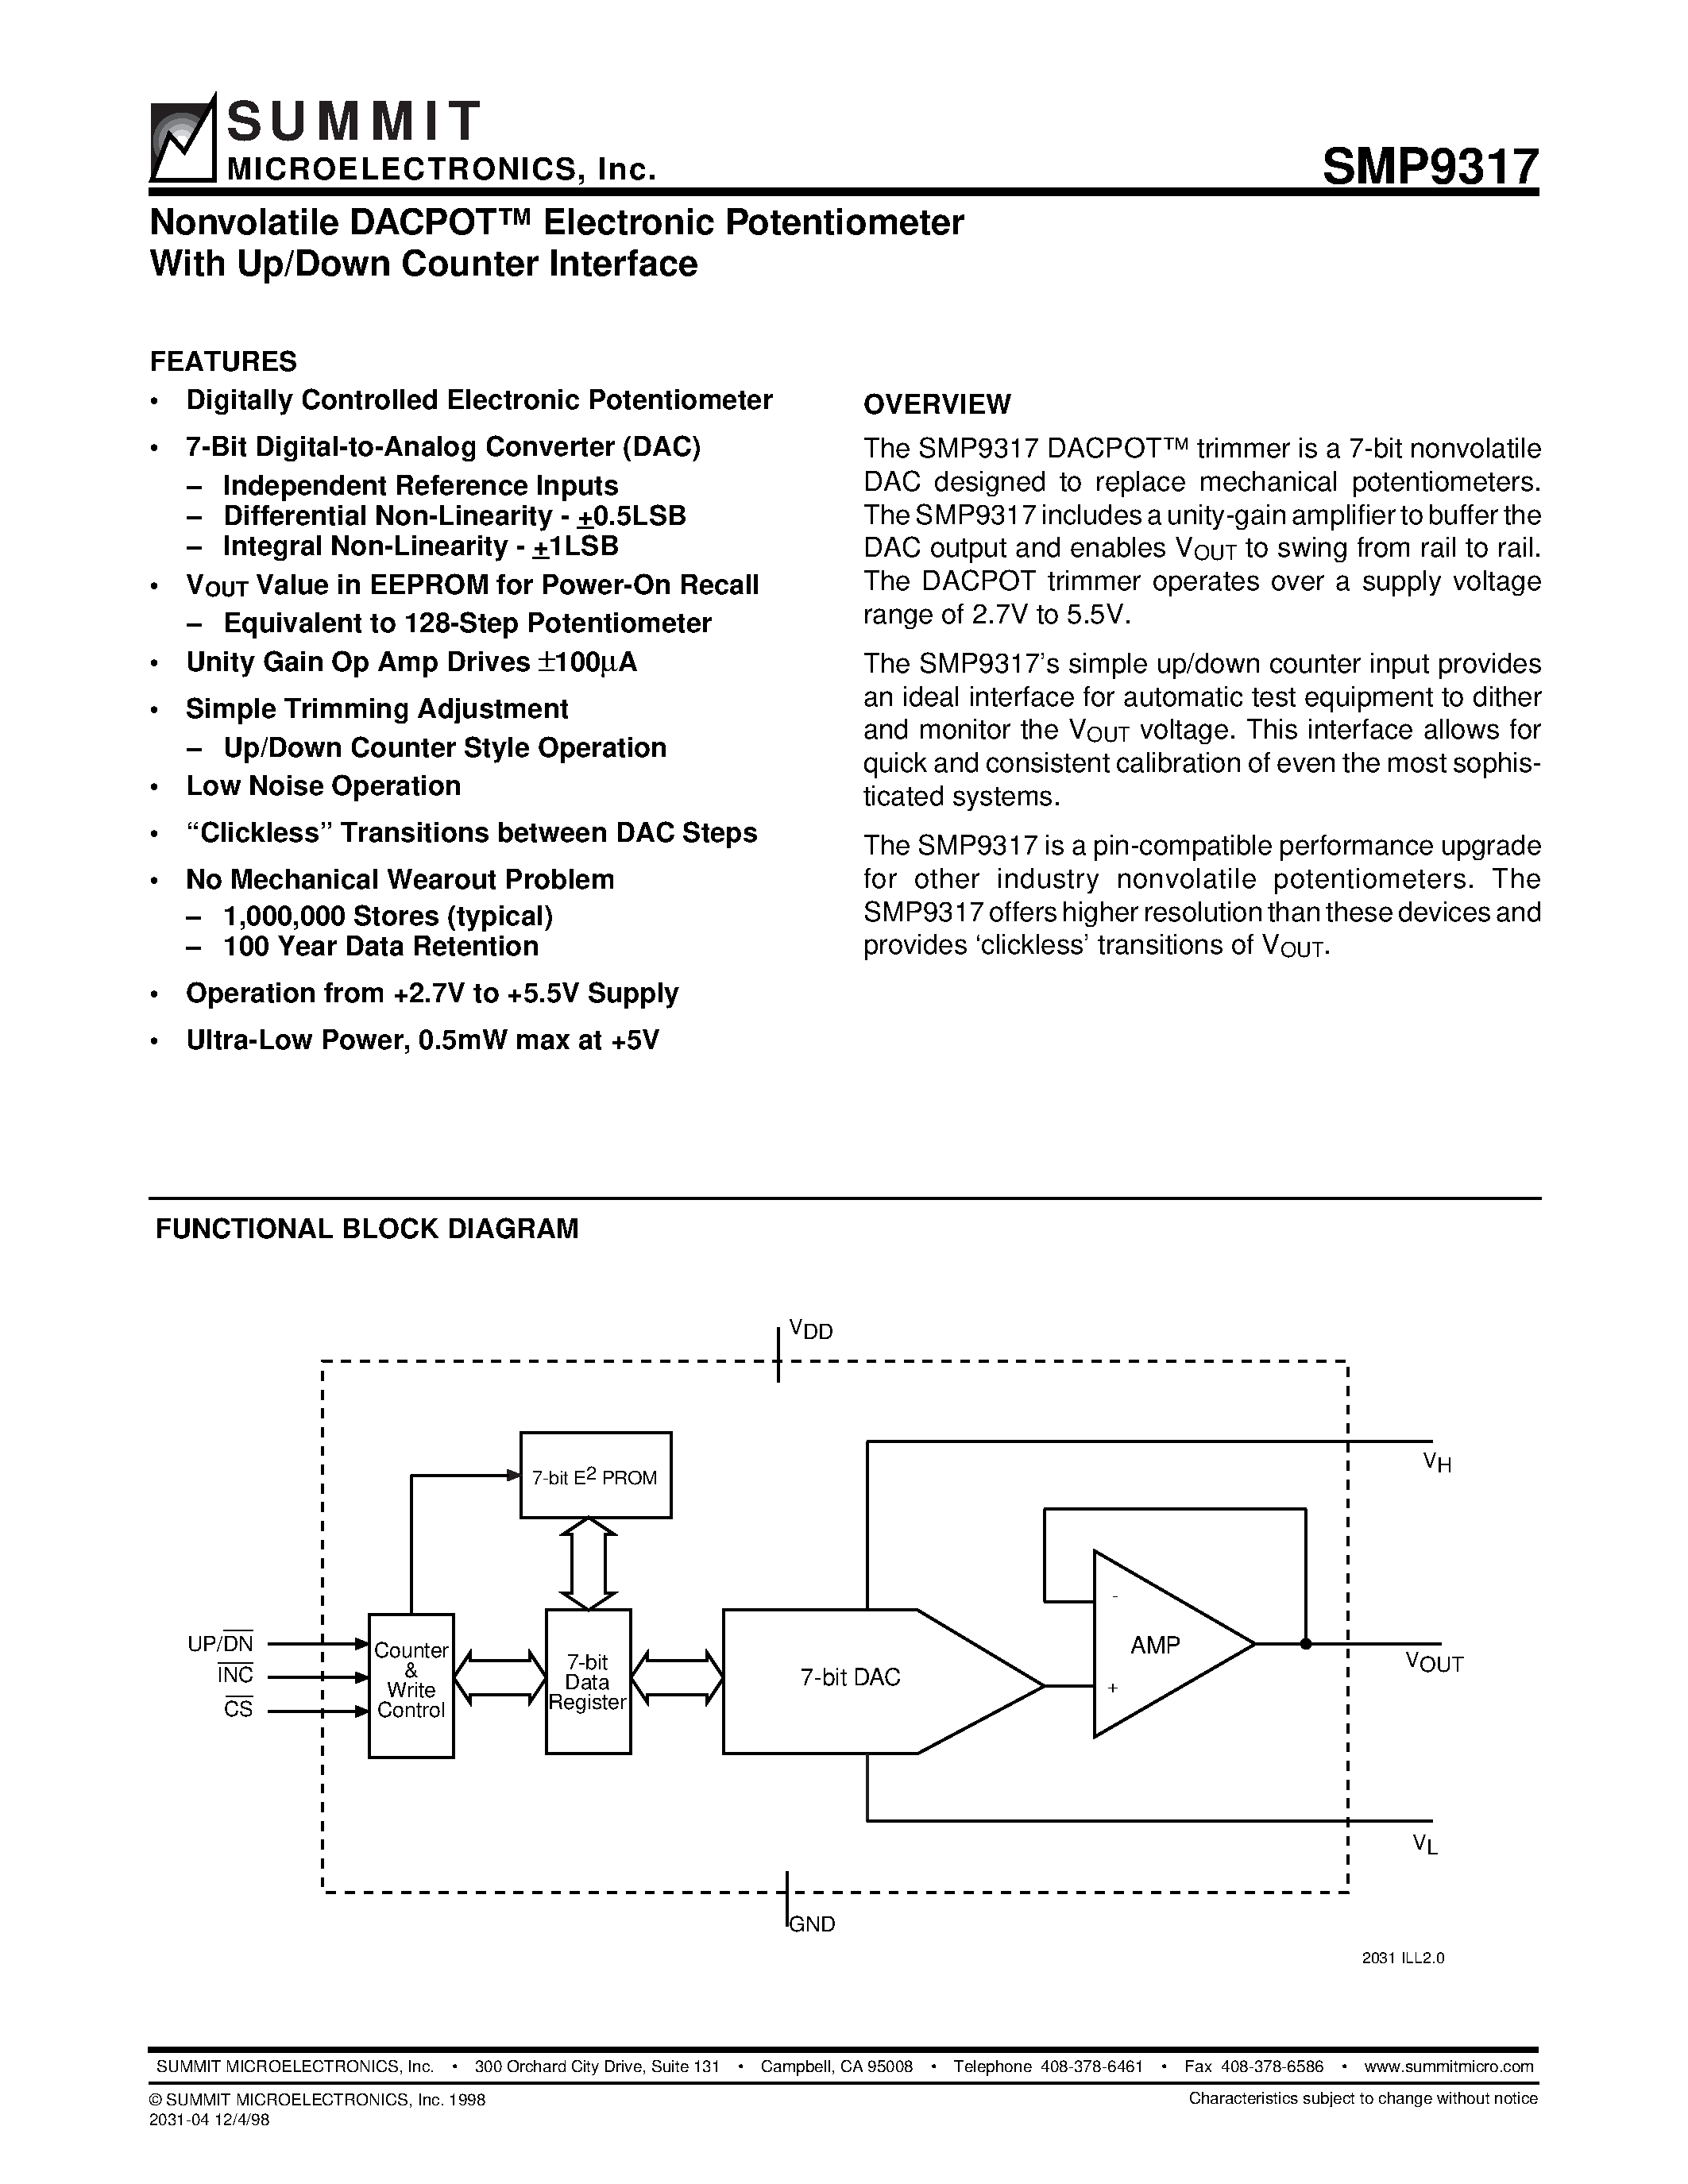 Даташит SMP9317 - Nonvolatile DACPOT Electronic Potentiometer With Up/Down Counter Interface страница 1